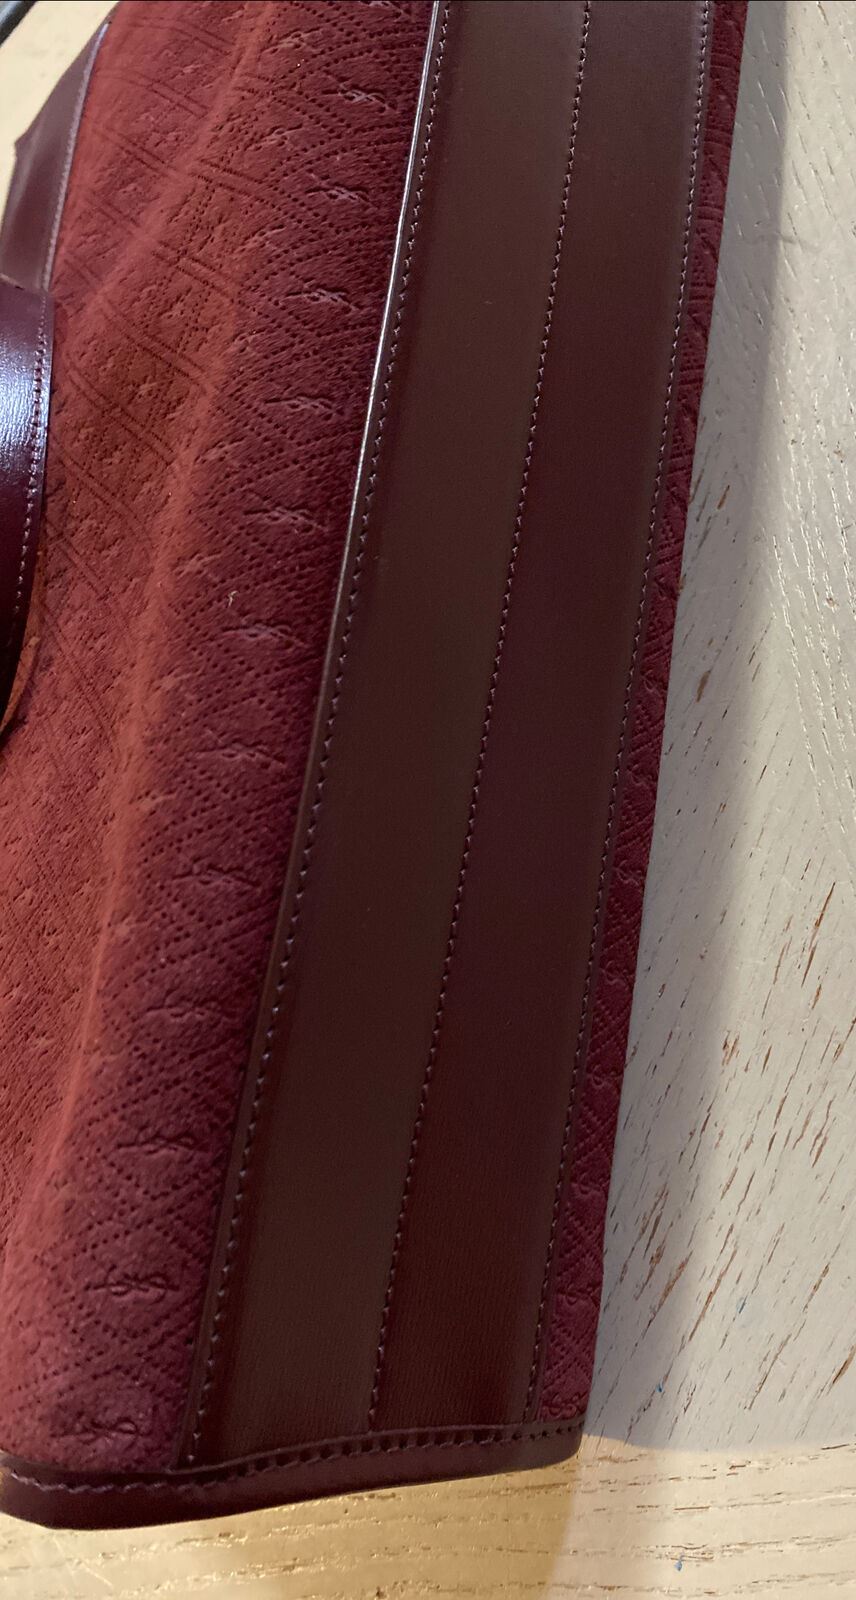 Новая кожаная/замшевая большая сумка Saint Laurent YSL с верхней ручкой за 2250 долларов, бордовая, Италия 